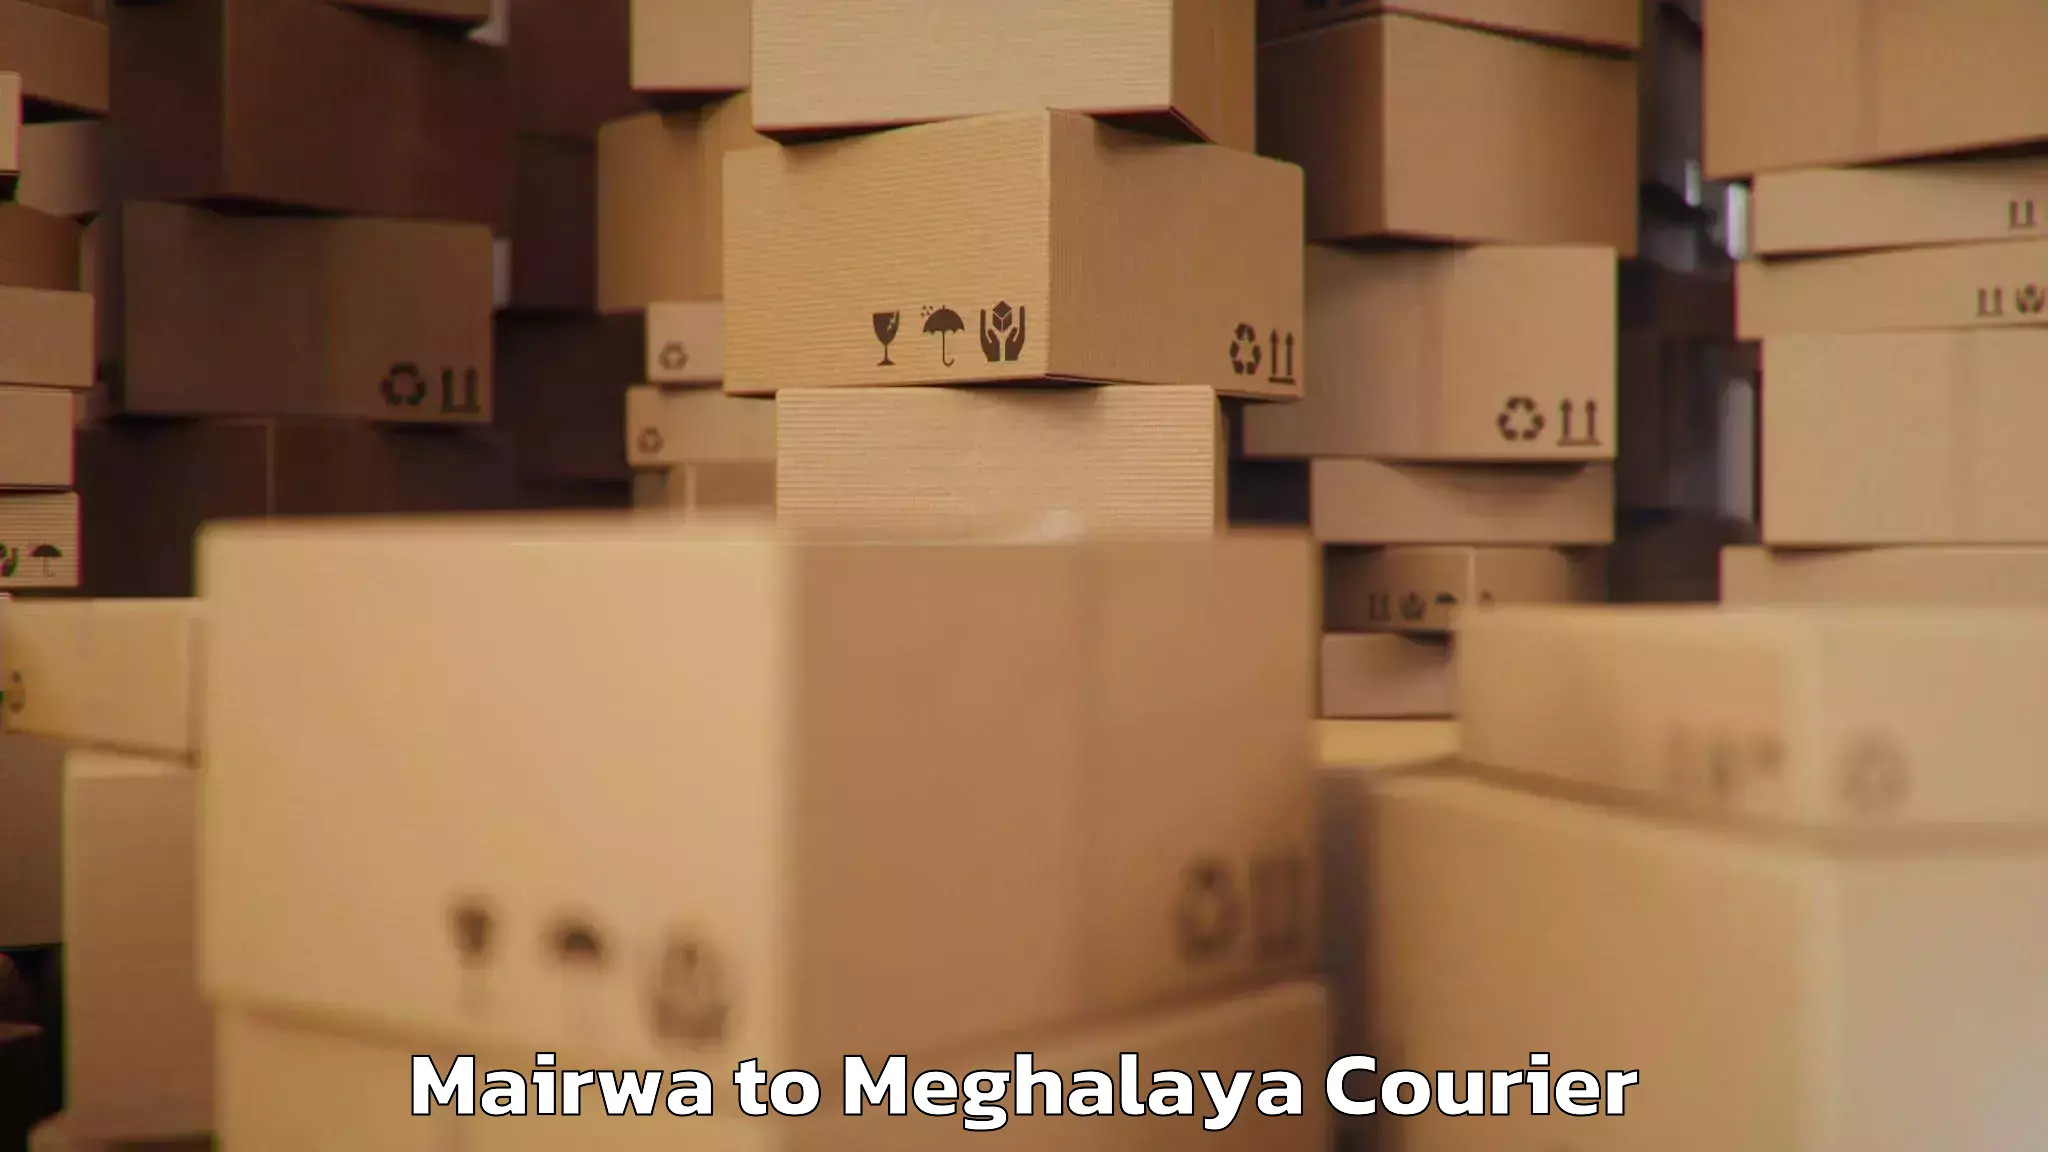 Baggage transport technology Mairwa to Meghalaya